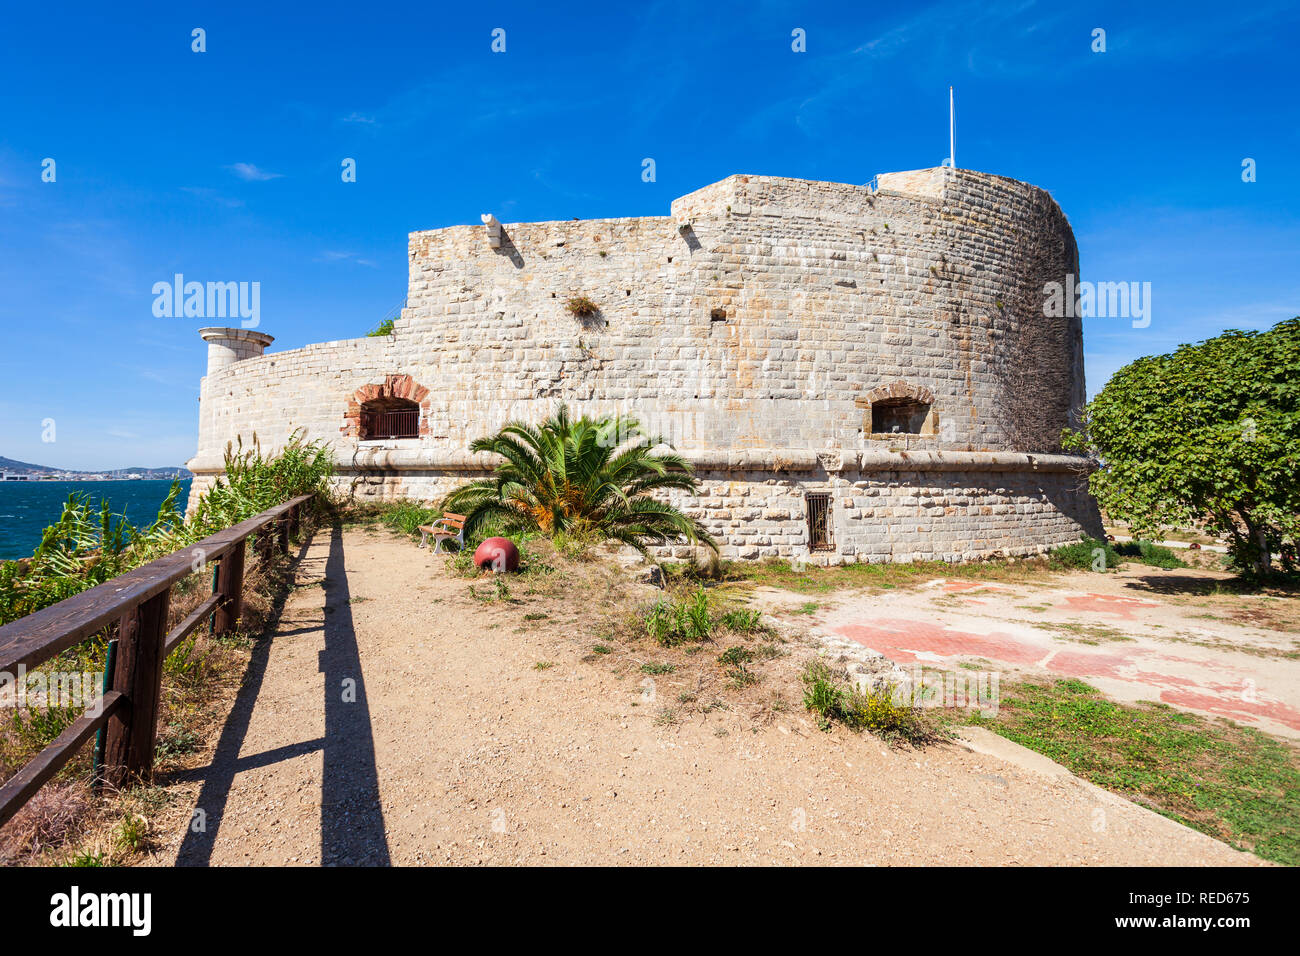 La tournée royale tower est un fort construit pour protéger le port naval de Toulon City en France Banque D'Images